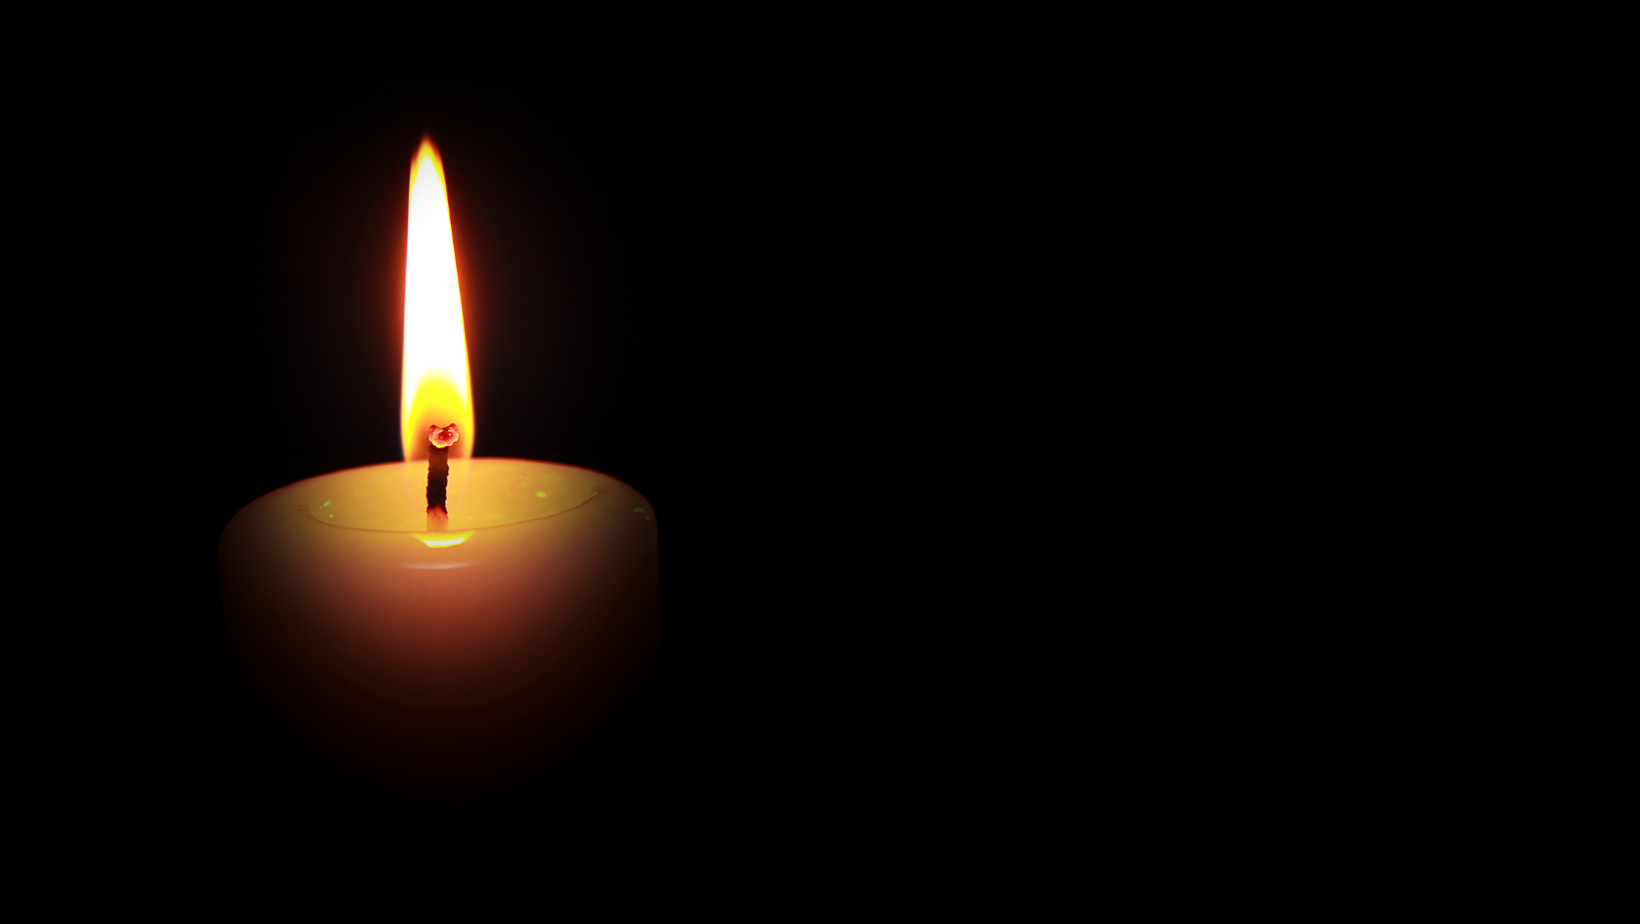 Auf schwarzem Hintergrund wird eine Kerze angezündet, um Brigitte Maser, einer verstorbenen Aktivistin, zu ehren.